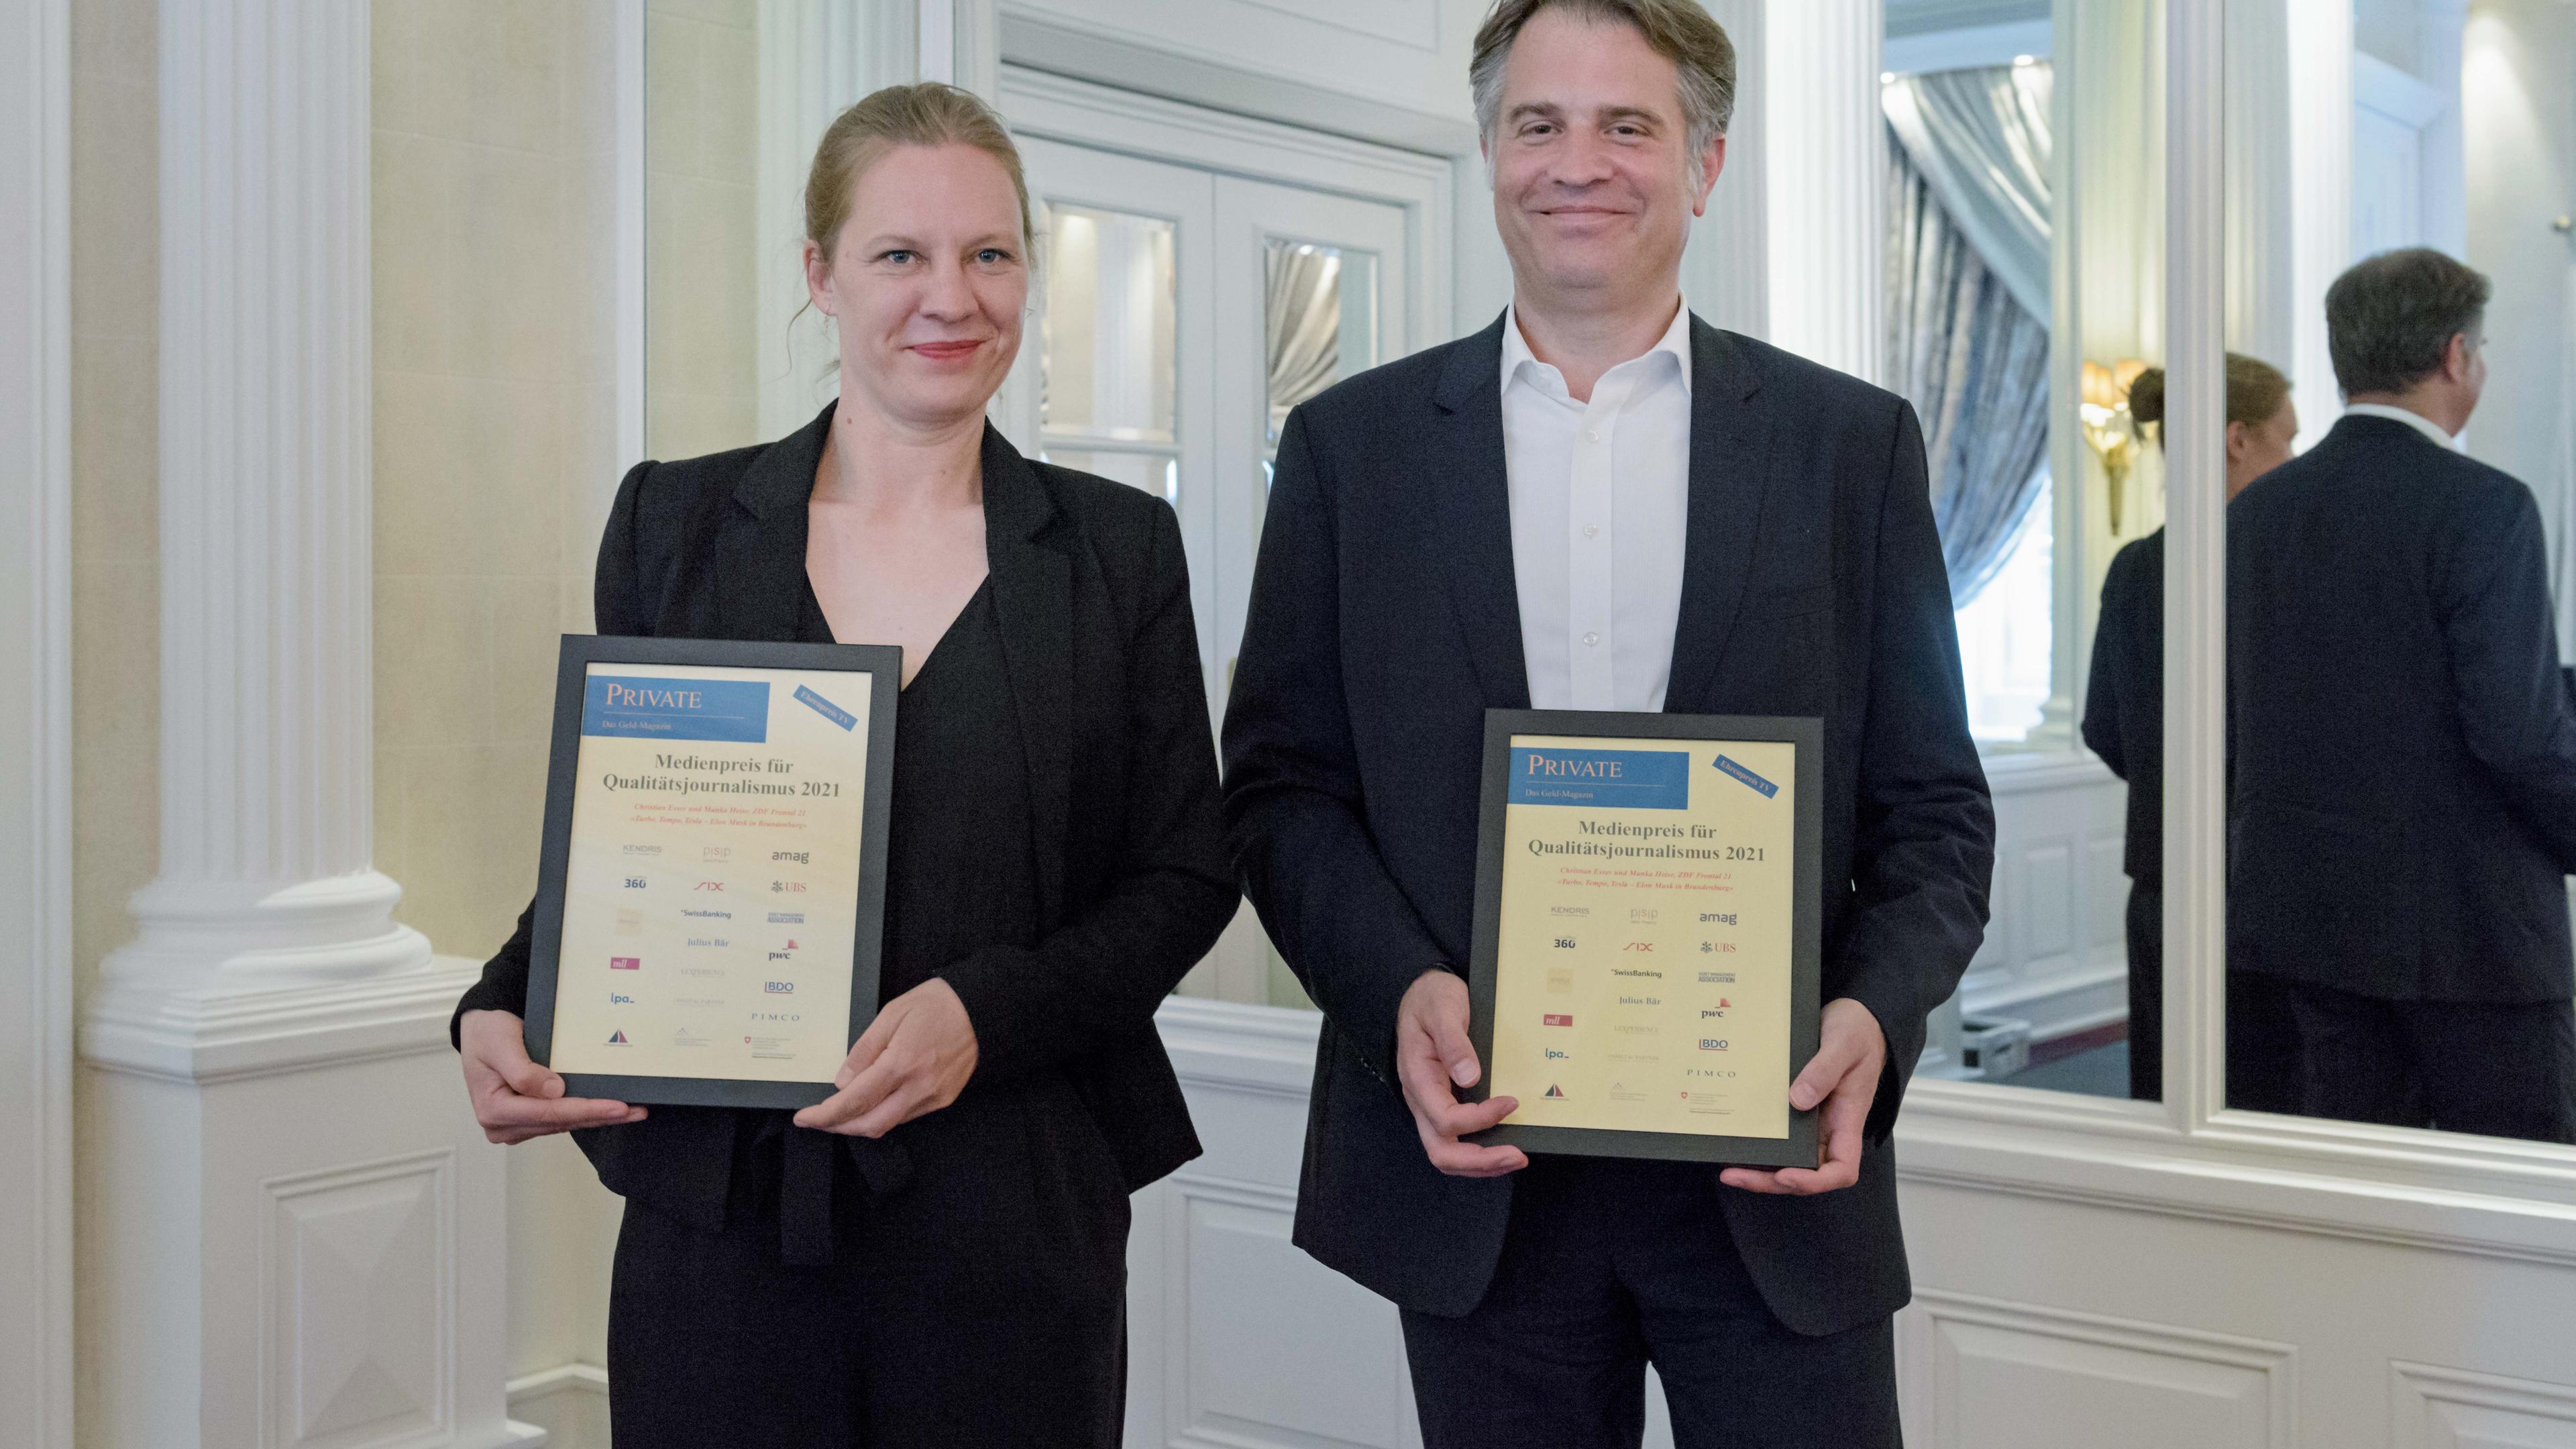 Manka Heise und Christian Esser mit dem "Private-Medienpreis für Qualtätsjournalismus 2021"